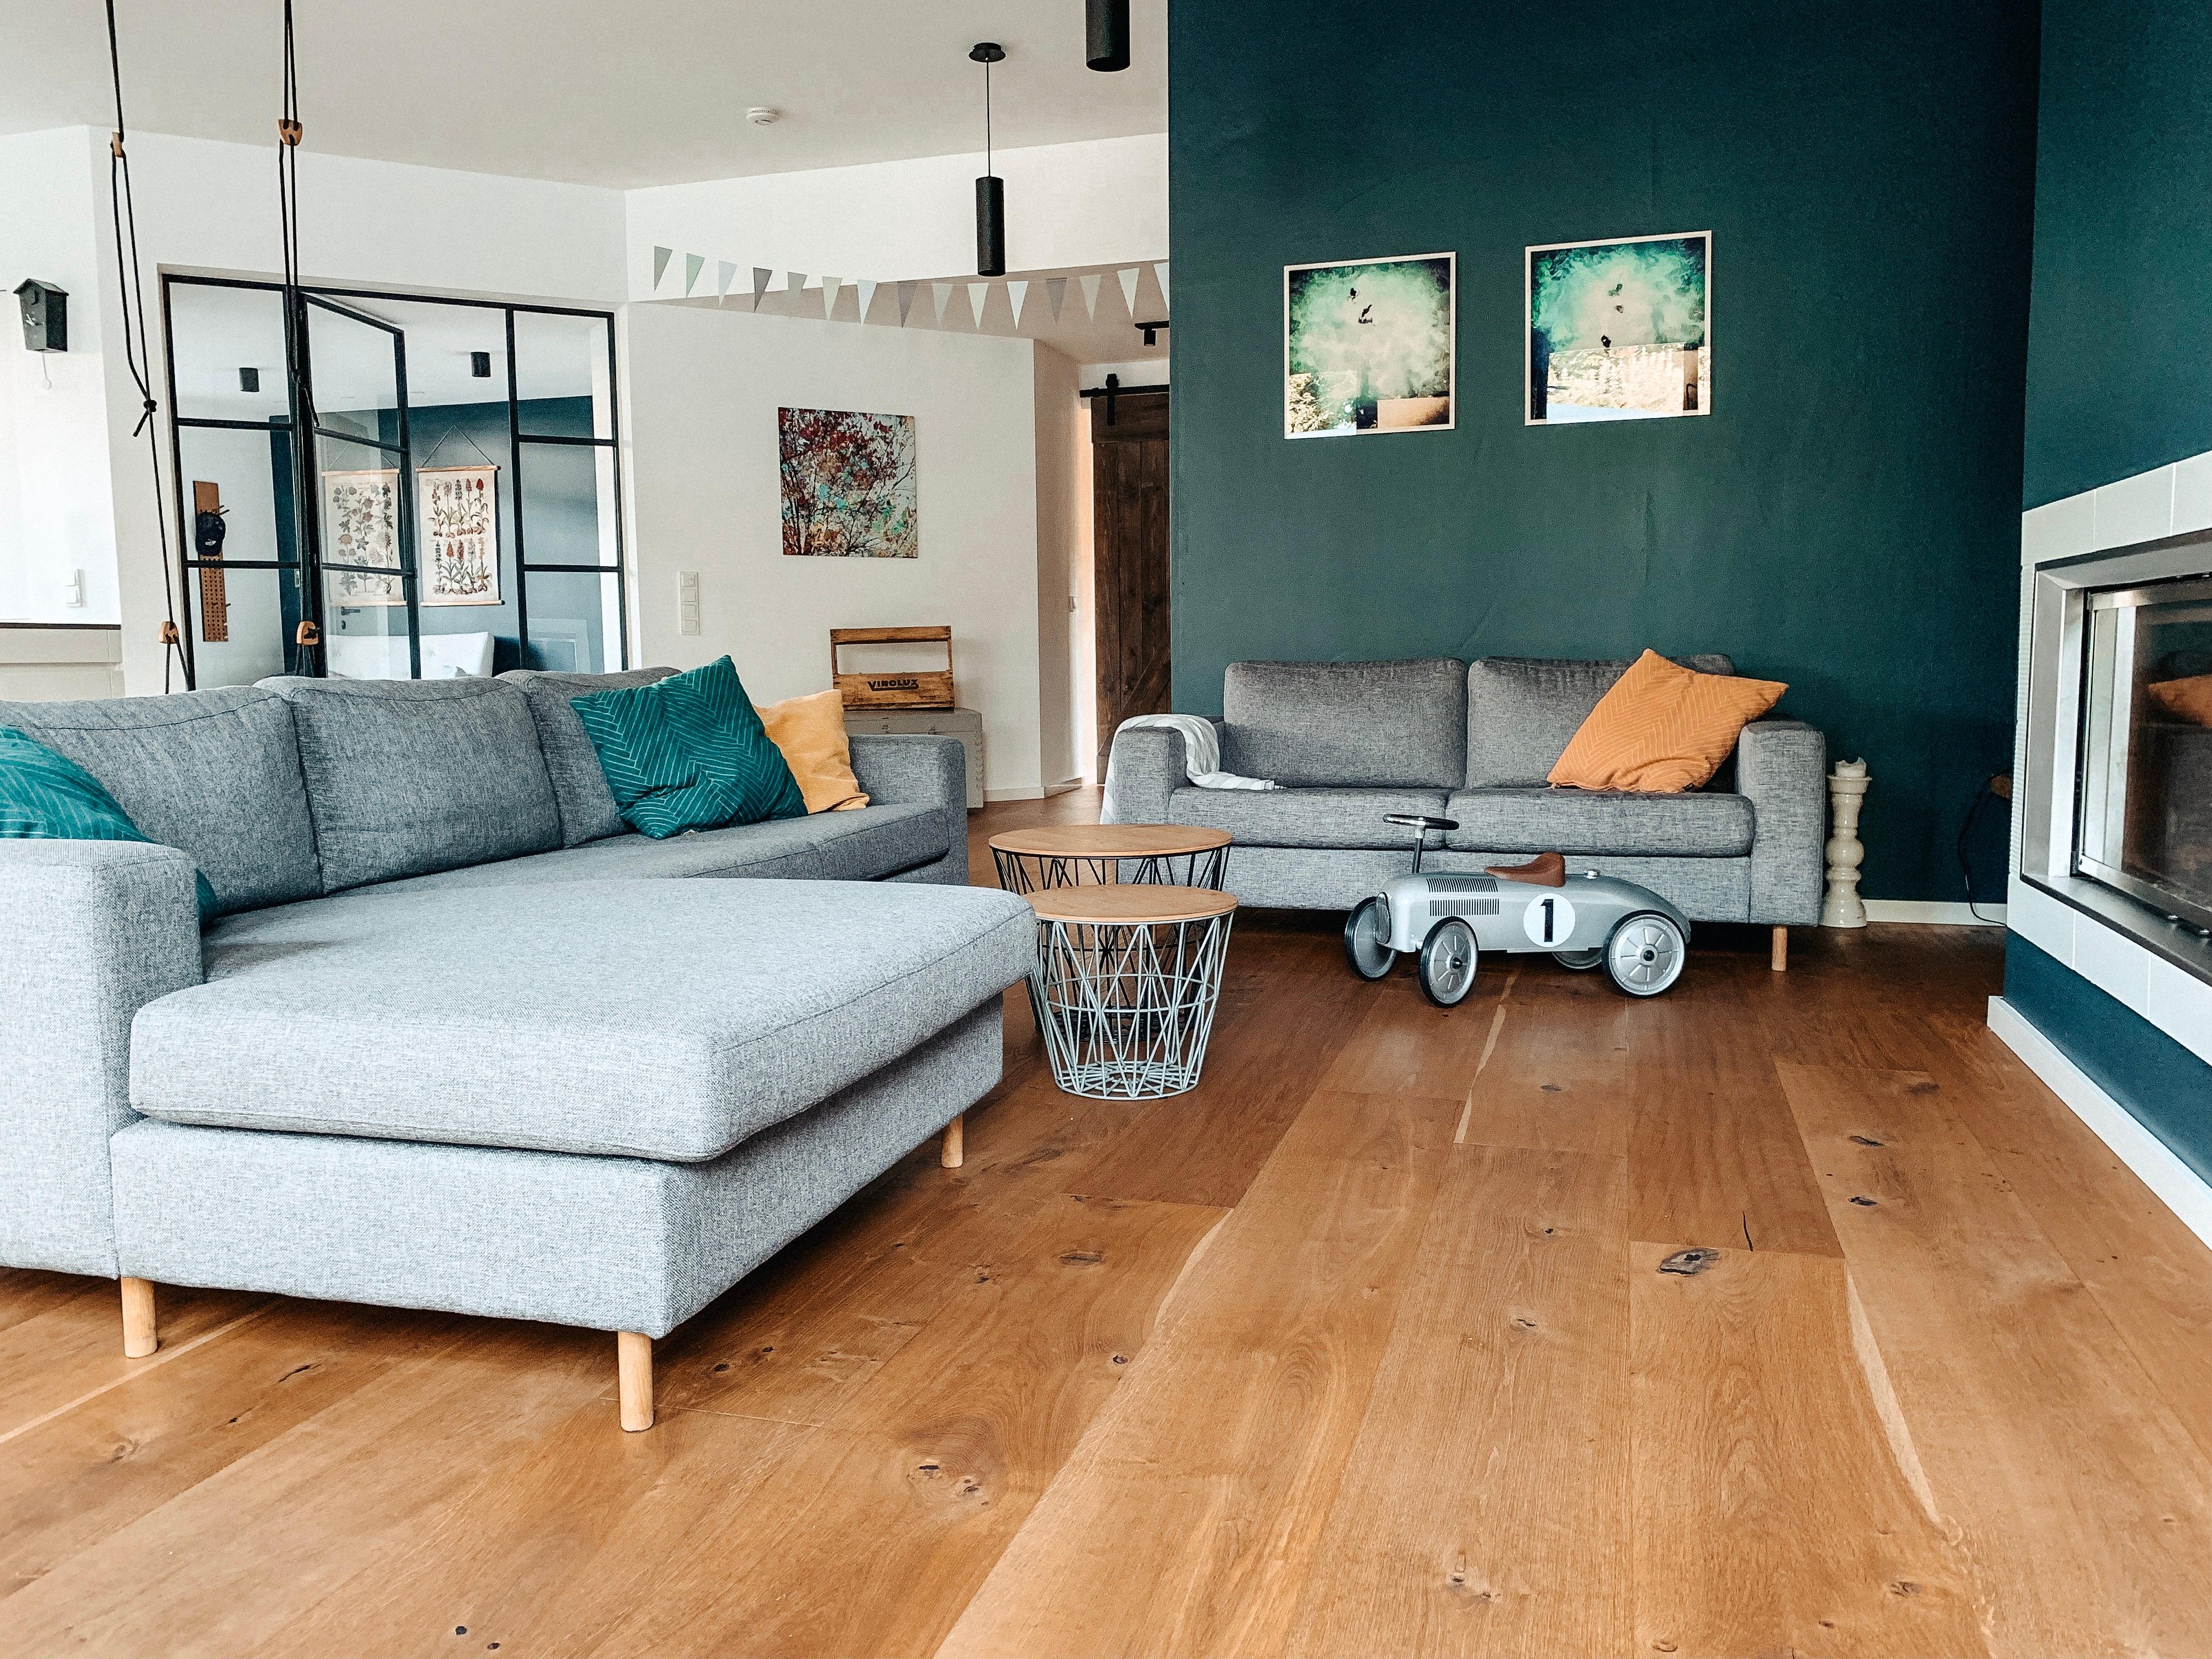 Unser rustikal-minimalistisches Wohnzimmer #wohnzimmergestaltung #livingchallenge #vierkanthof #zuhausesein